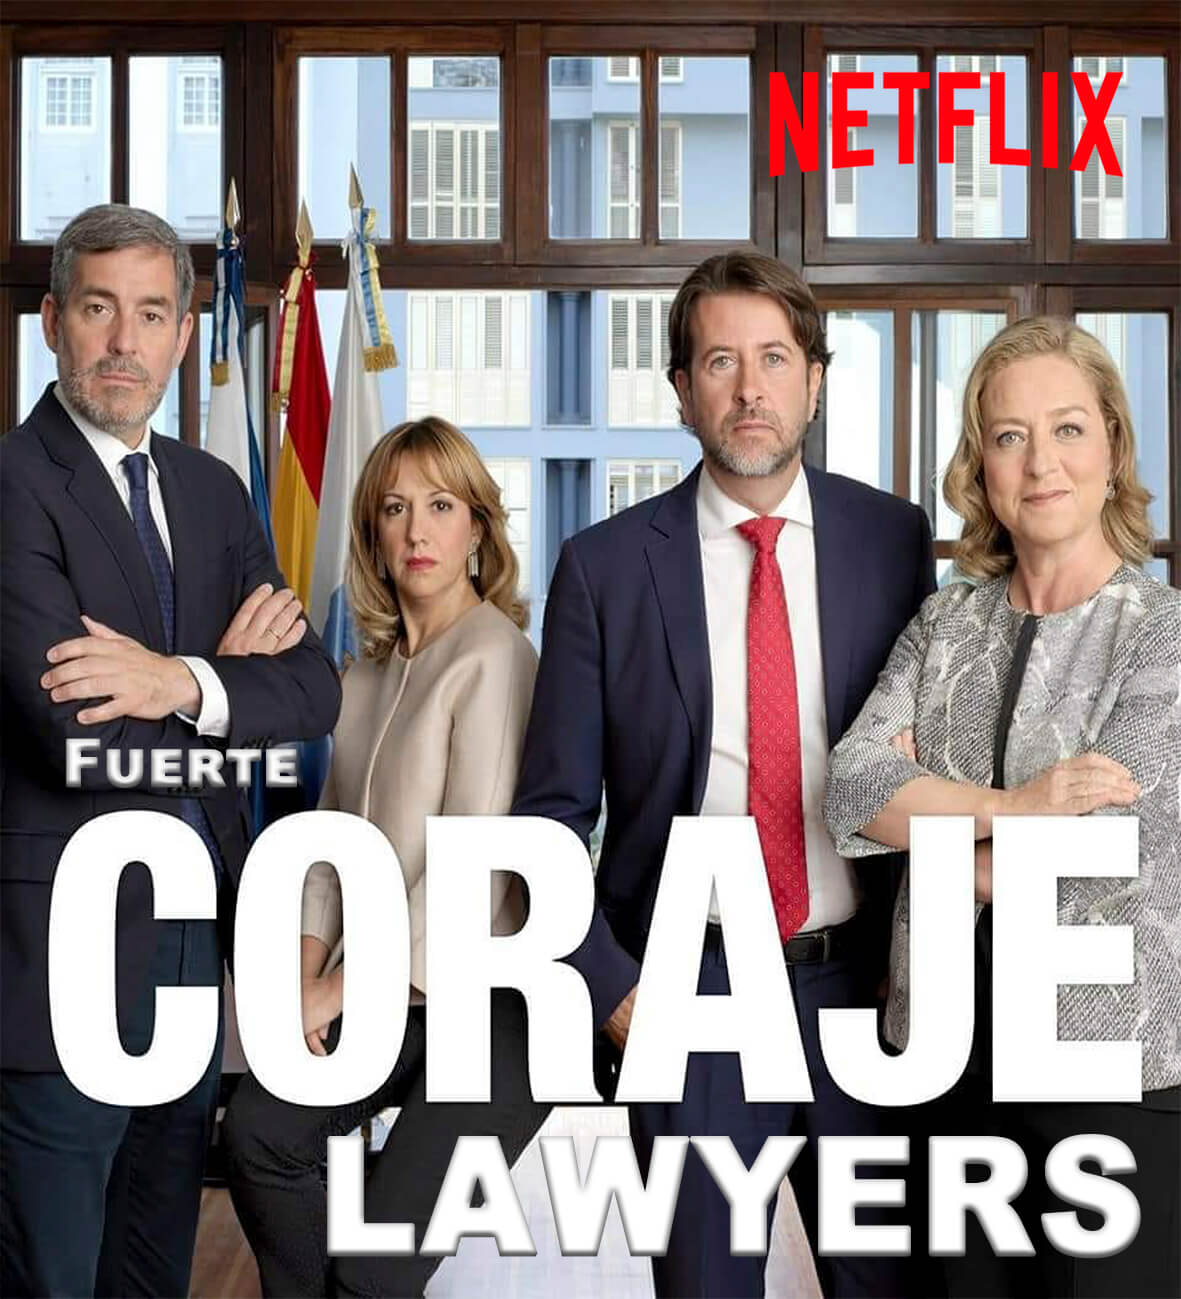 La serie de CC en Netflix. El Baifo Ilustrado